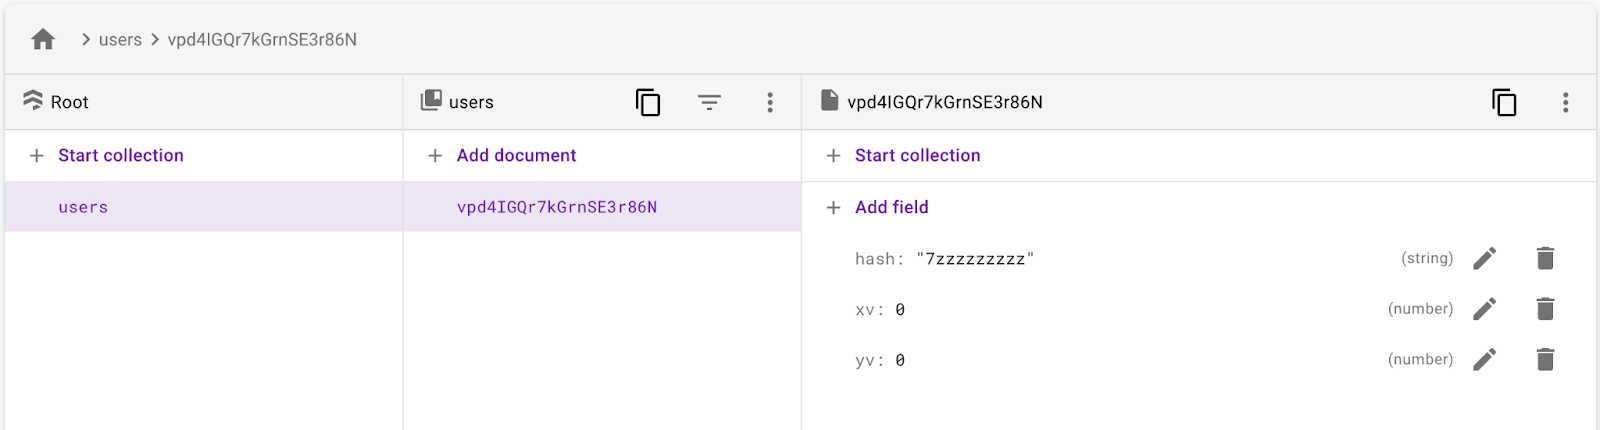 xv、yv、hash フィールドを持つユーザー ドキュメントを持つ users コレクション。